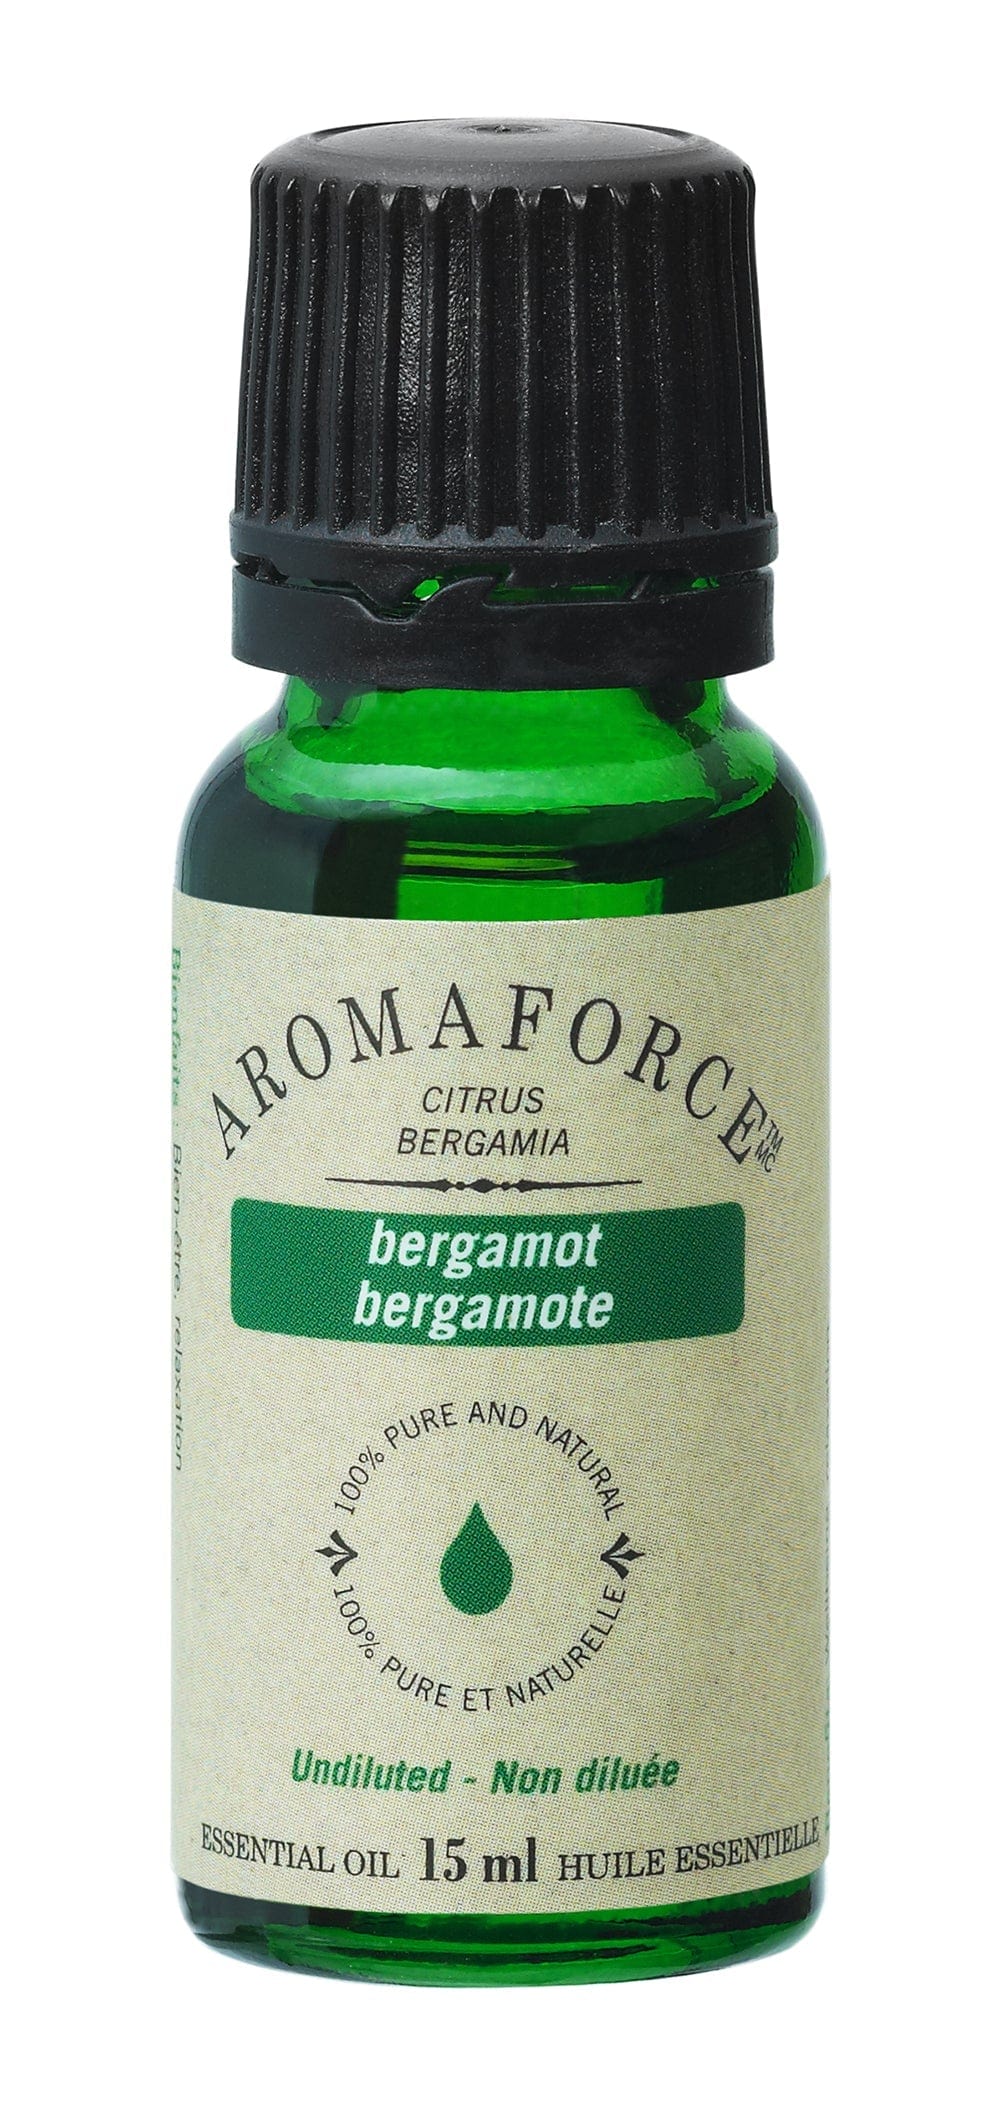 BIOFORCE (A. VOGEL) Soins & beauté Huile essentielle bergamote 15ml